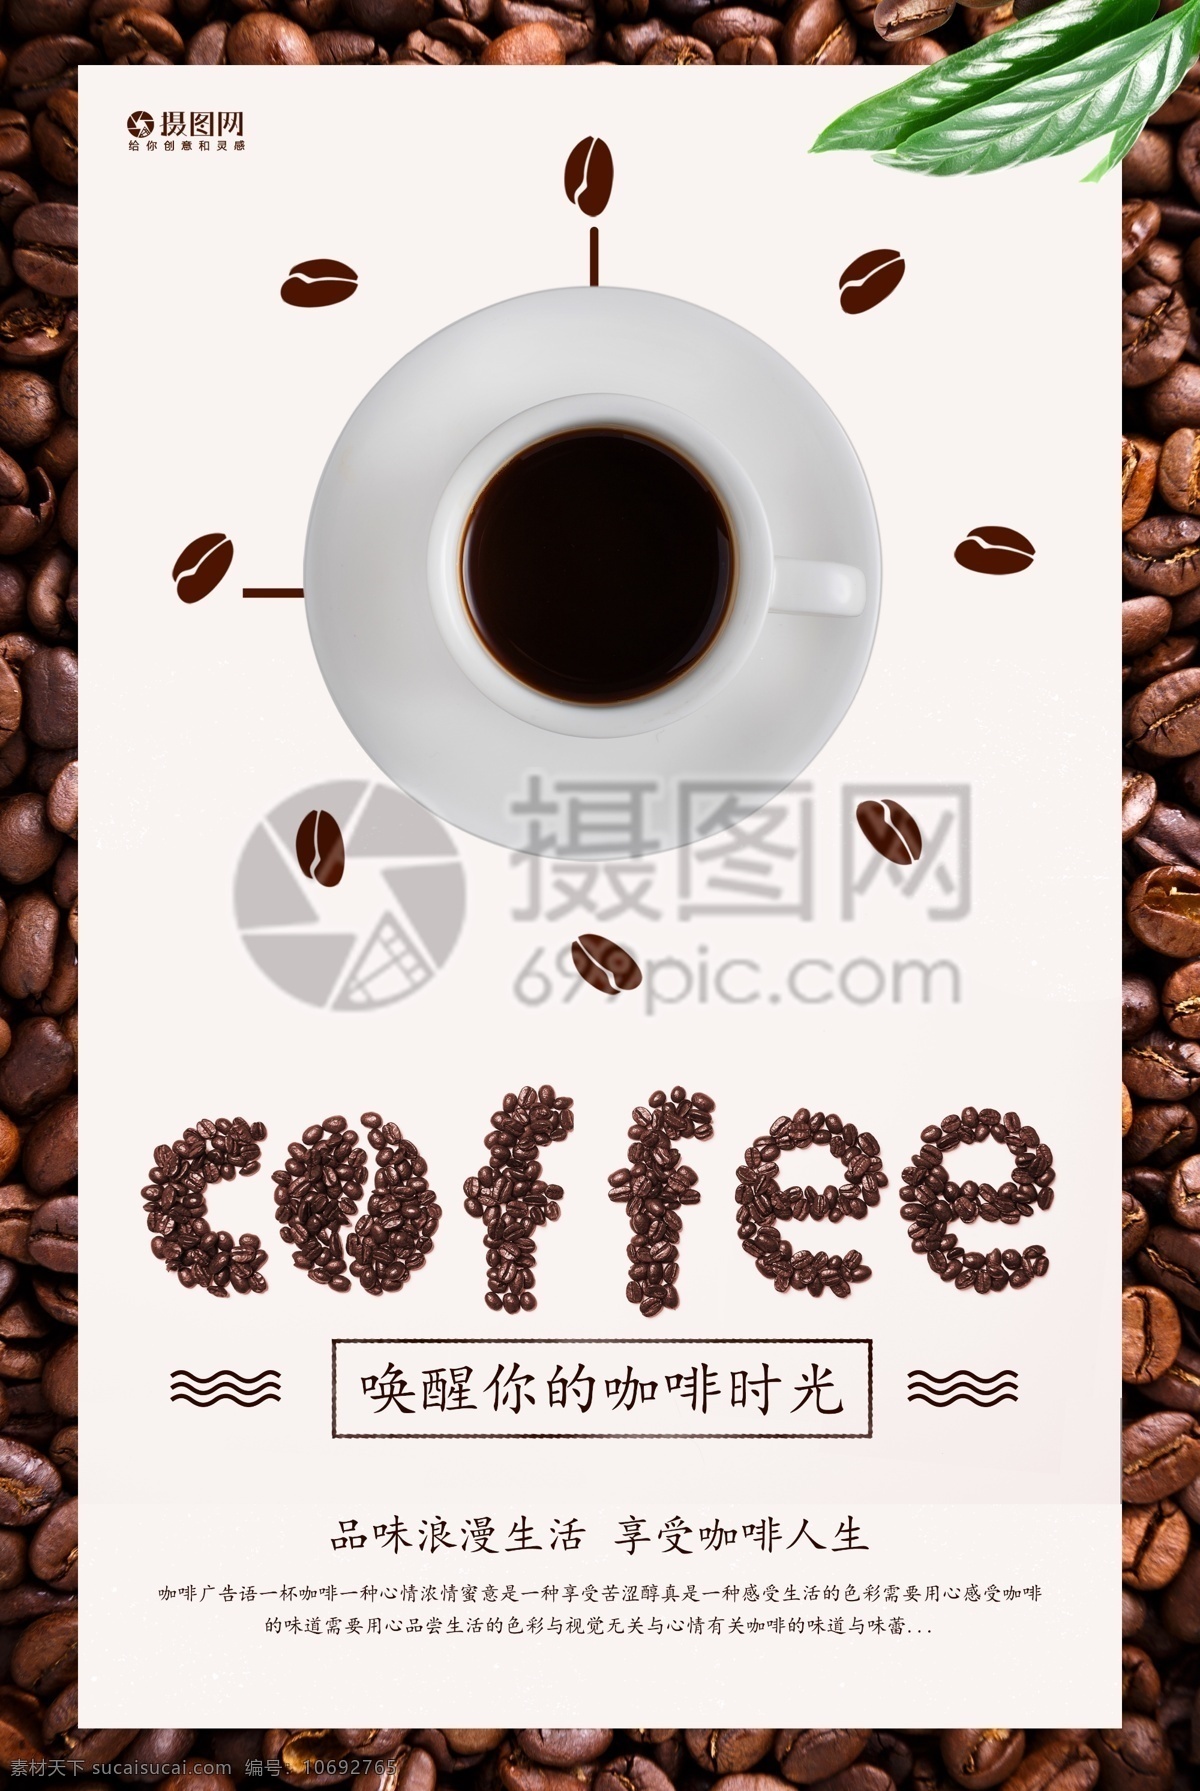 唤醒 咖啡 时光 海报 休闲时光 咖啡厅 咖啡屋 咖啡豆 美味咖啡 咖啡海报